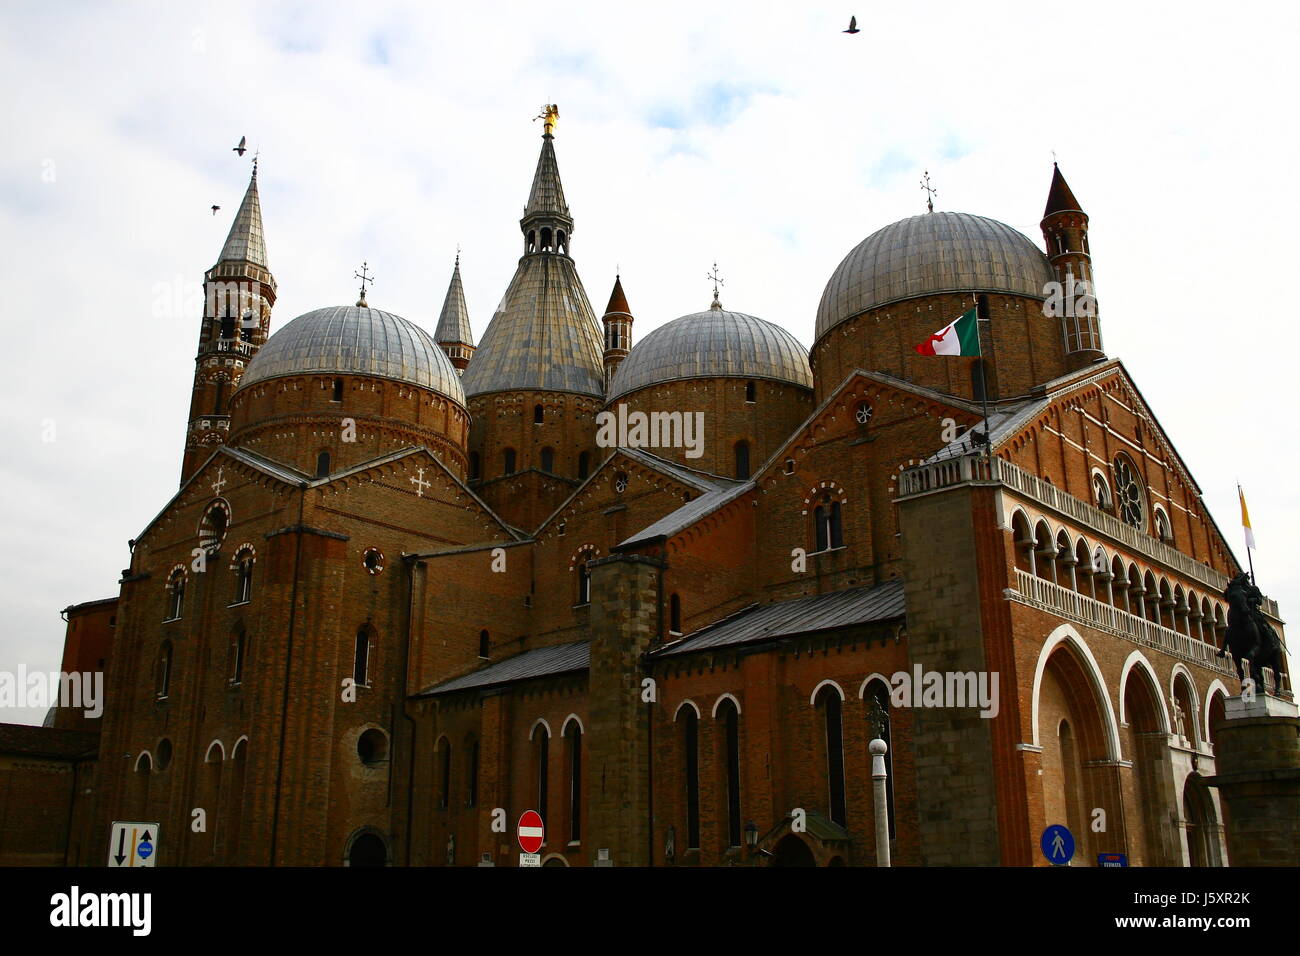 Storia Religione cattedrale stile di costruzione di architettura in stile architettonico Foto Stock